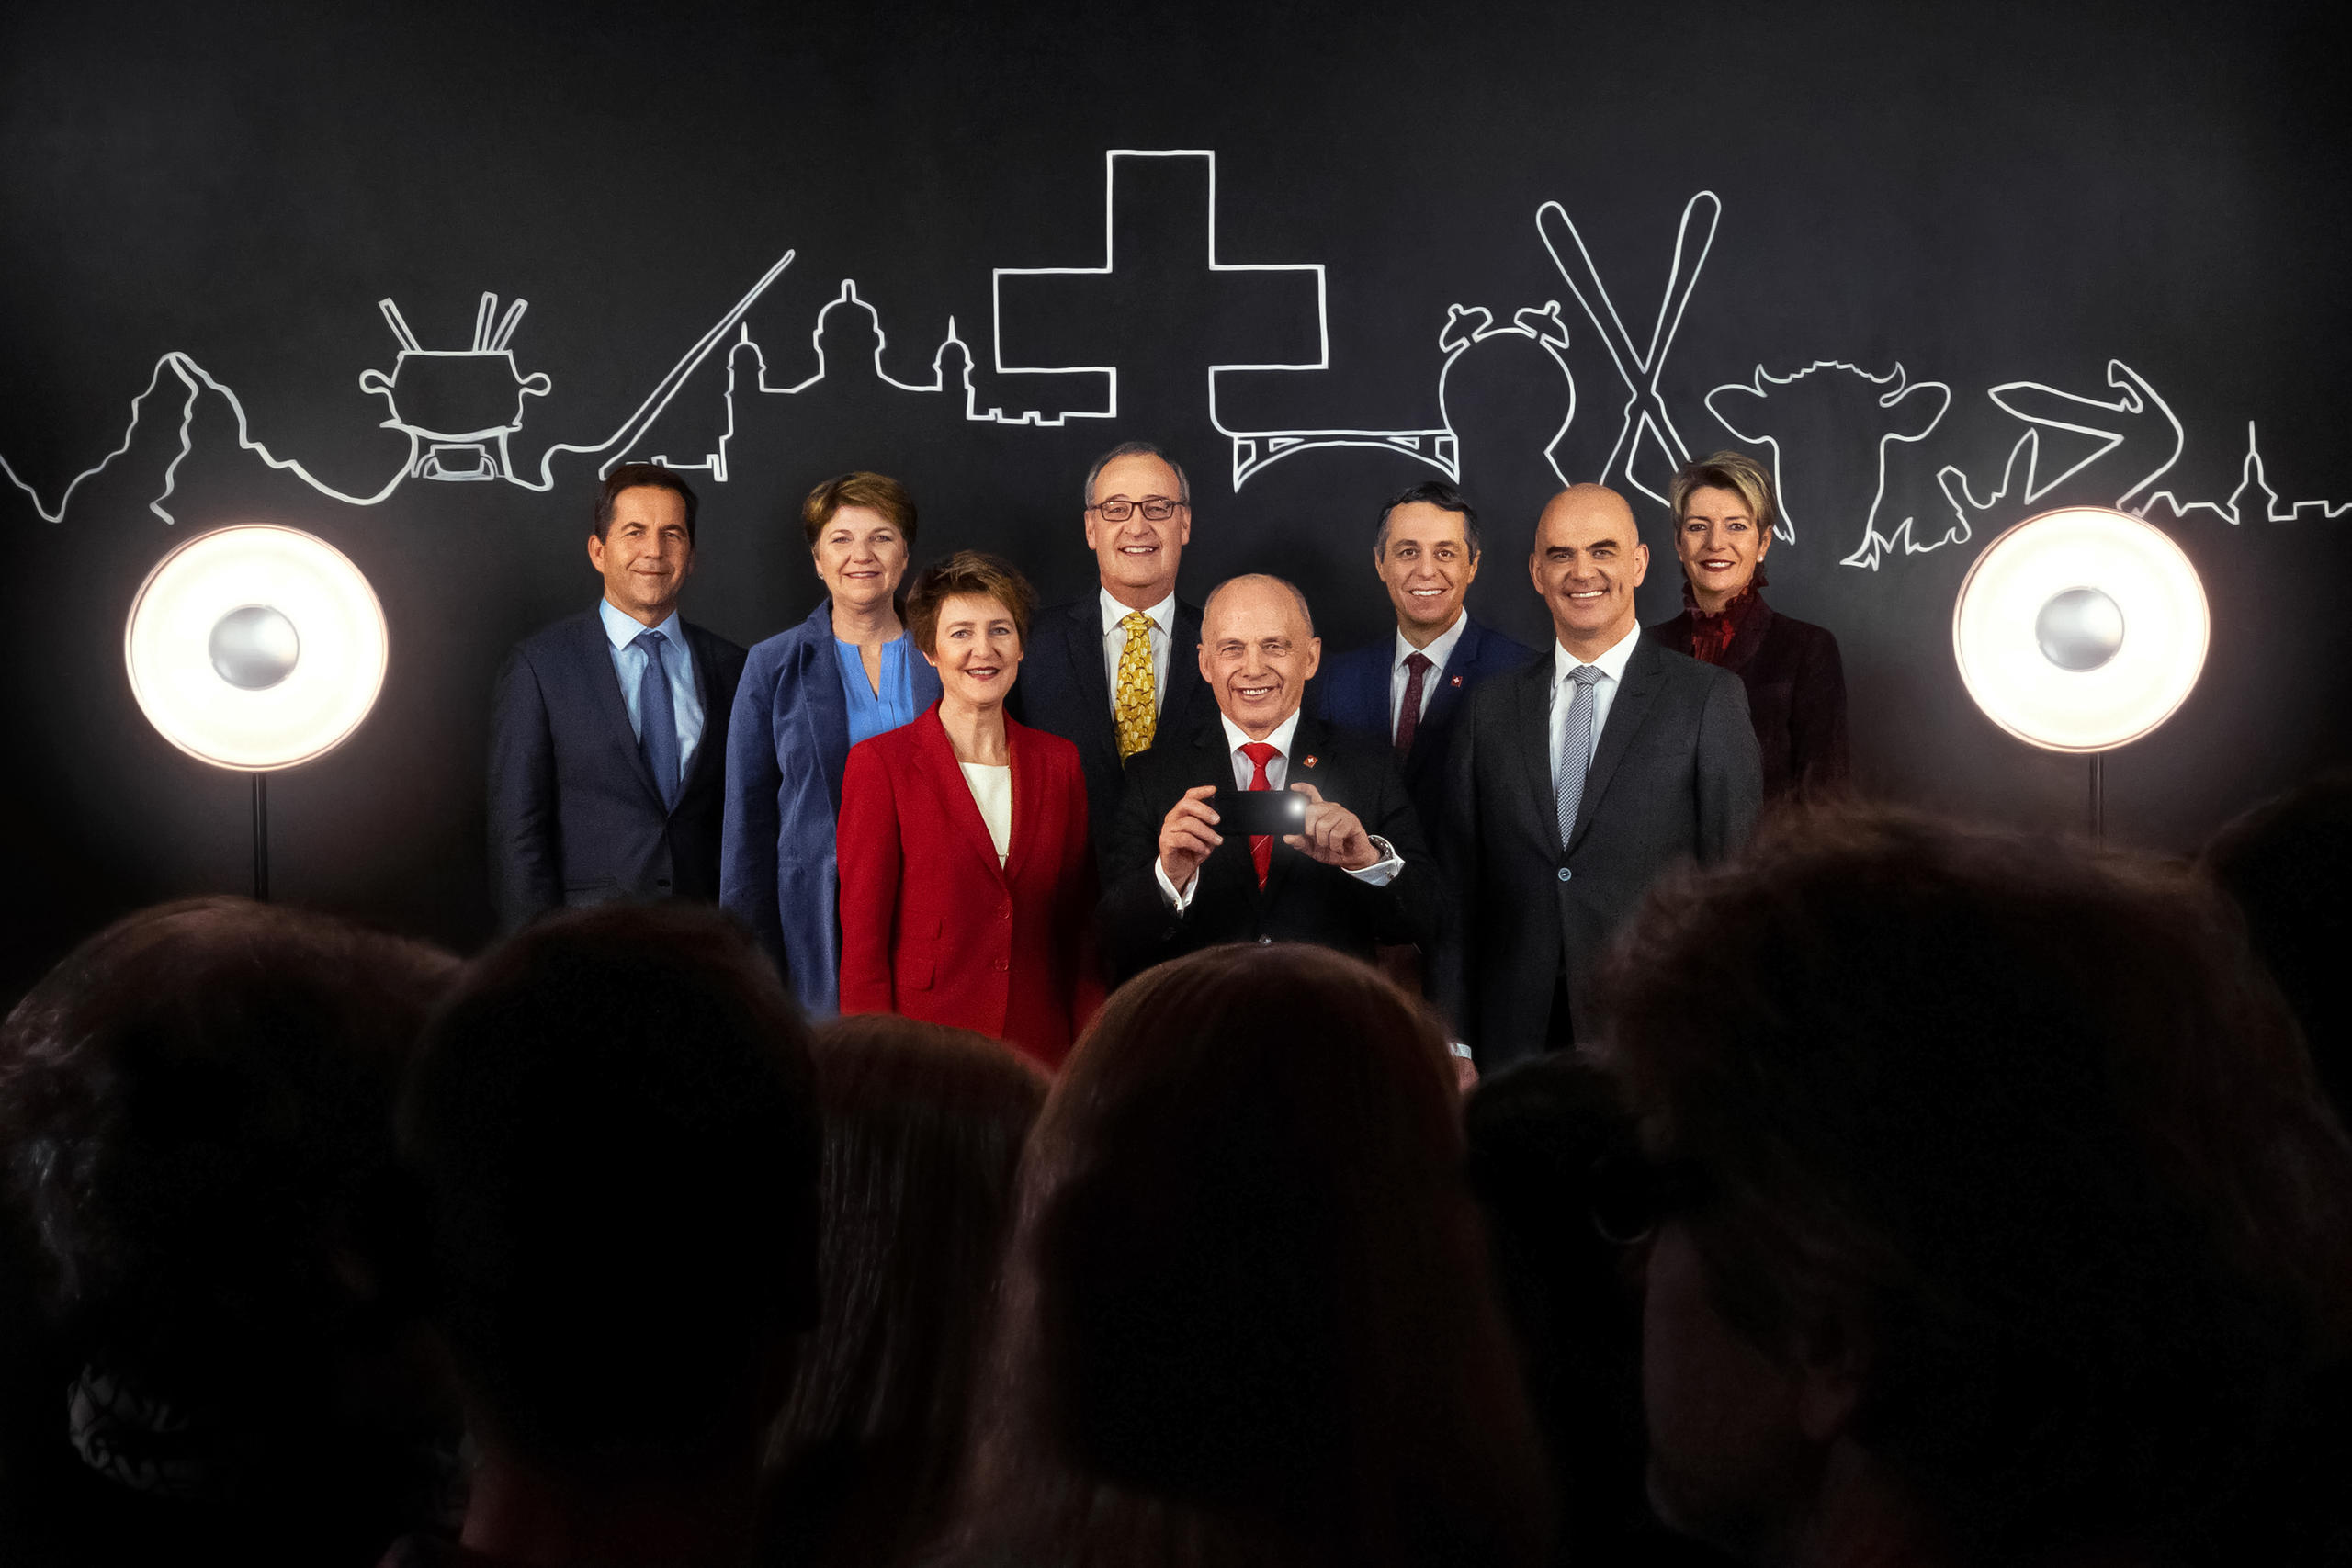 Foto di gruppo del governo (Maurer, al centro, regge uno smartphone); dietro, simboli stilizzati; davanti, persone di spalle